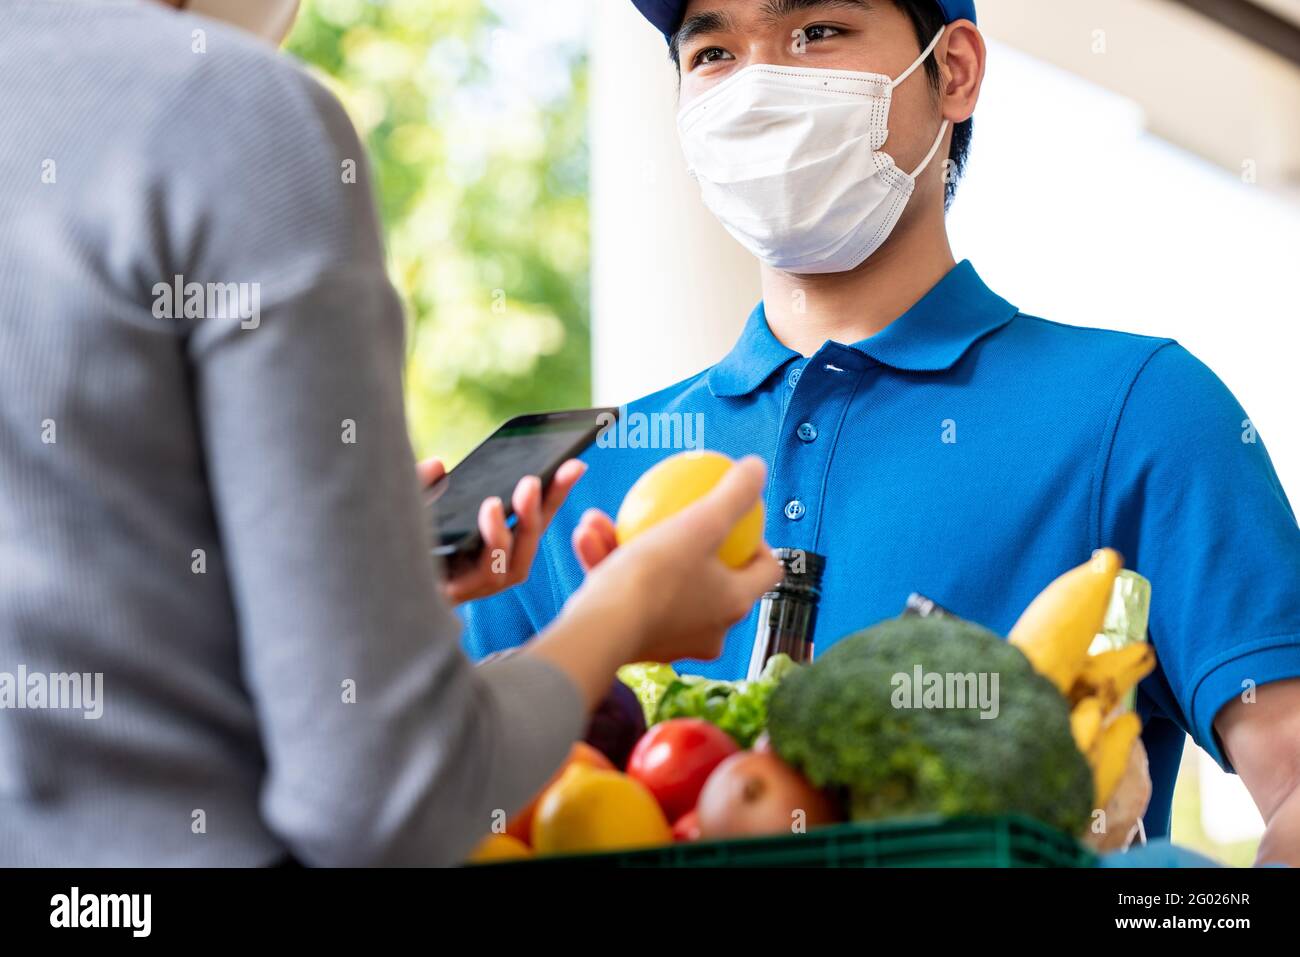 Un livreur asiatique hygiénique portant un masque facial tout en livrant des produits d'épicerie au client à la maison, livraison de nourriture en temps de pandémie concept Banque D'Images